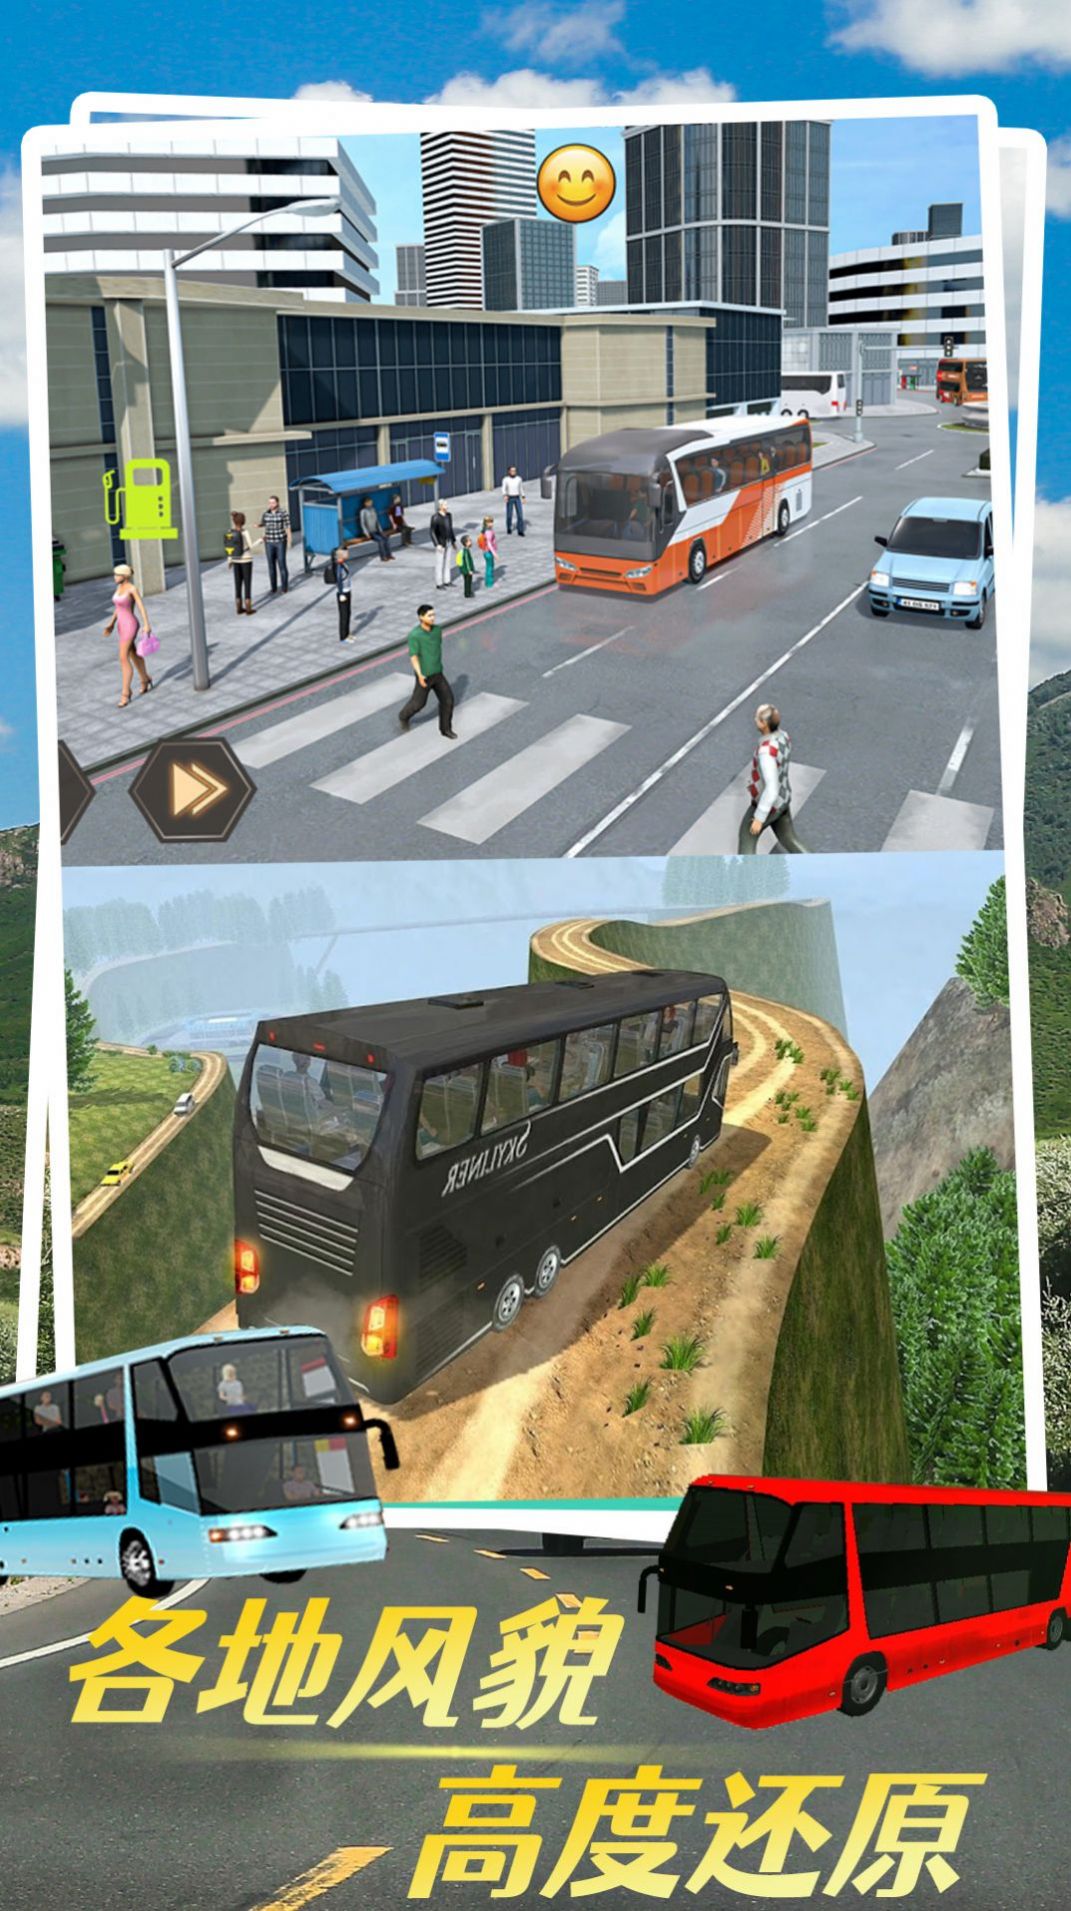 虚拟汽车模拟游戏图2